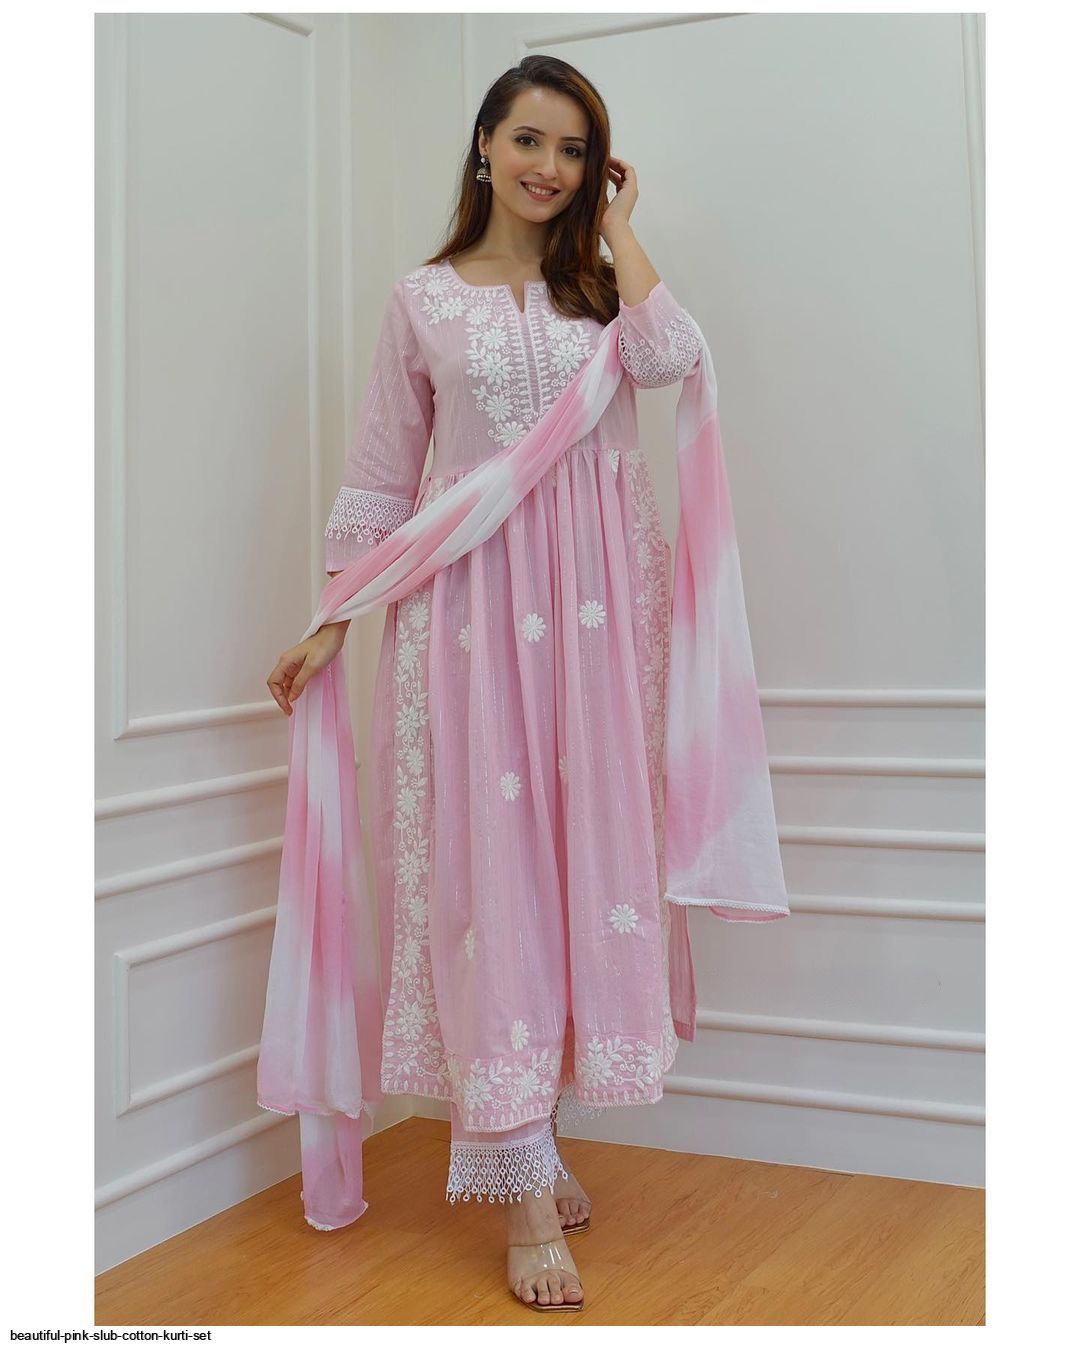 Pink Kurtis - Buy Pink Kurtis Online Starting at Just ₹170 | Meesho